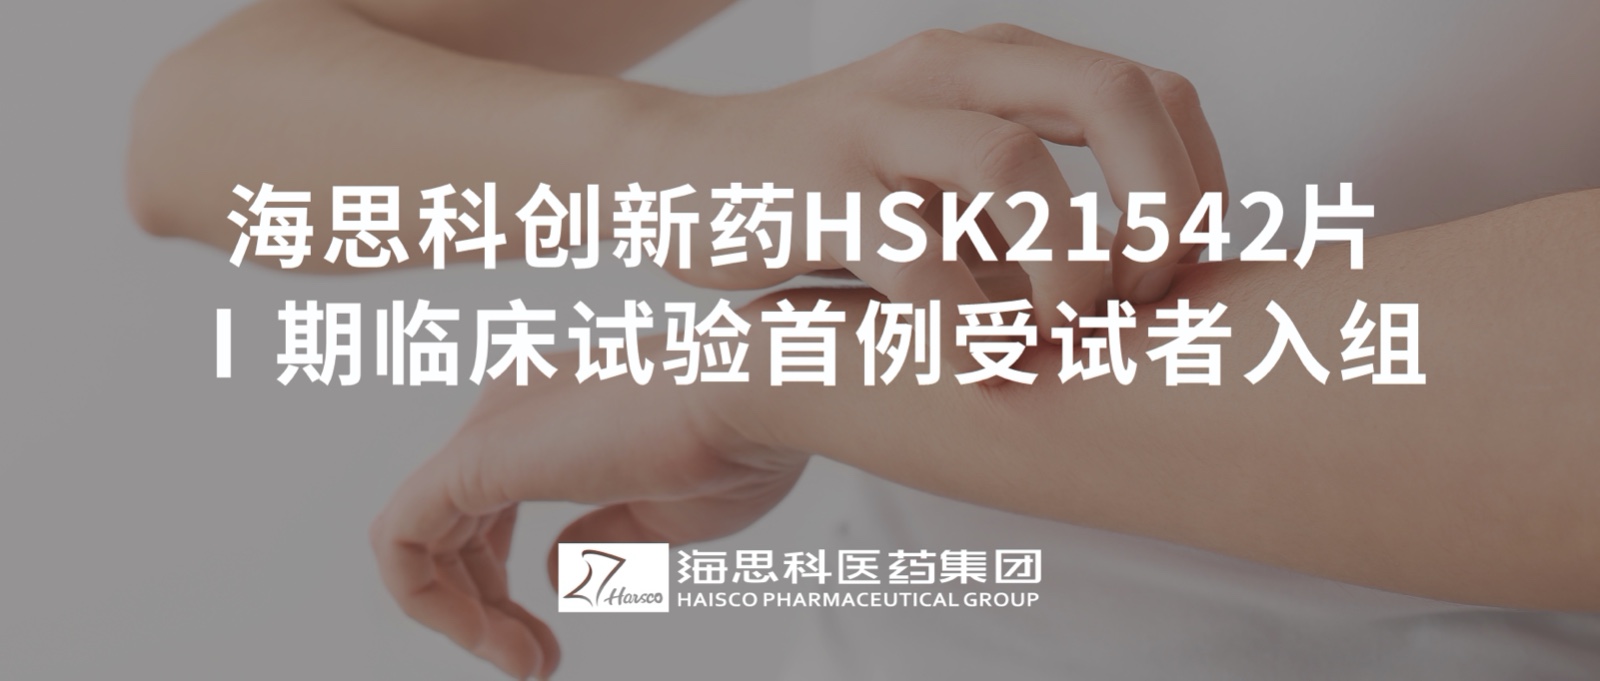 明升ms88创新药HSK21542片Ⅰ期临床试验首例受试者入组